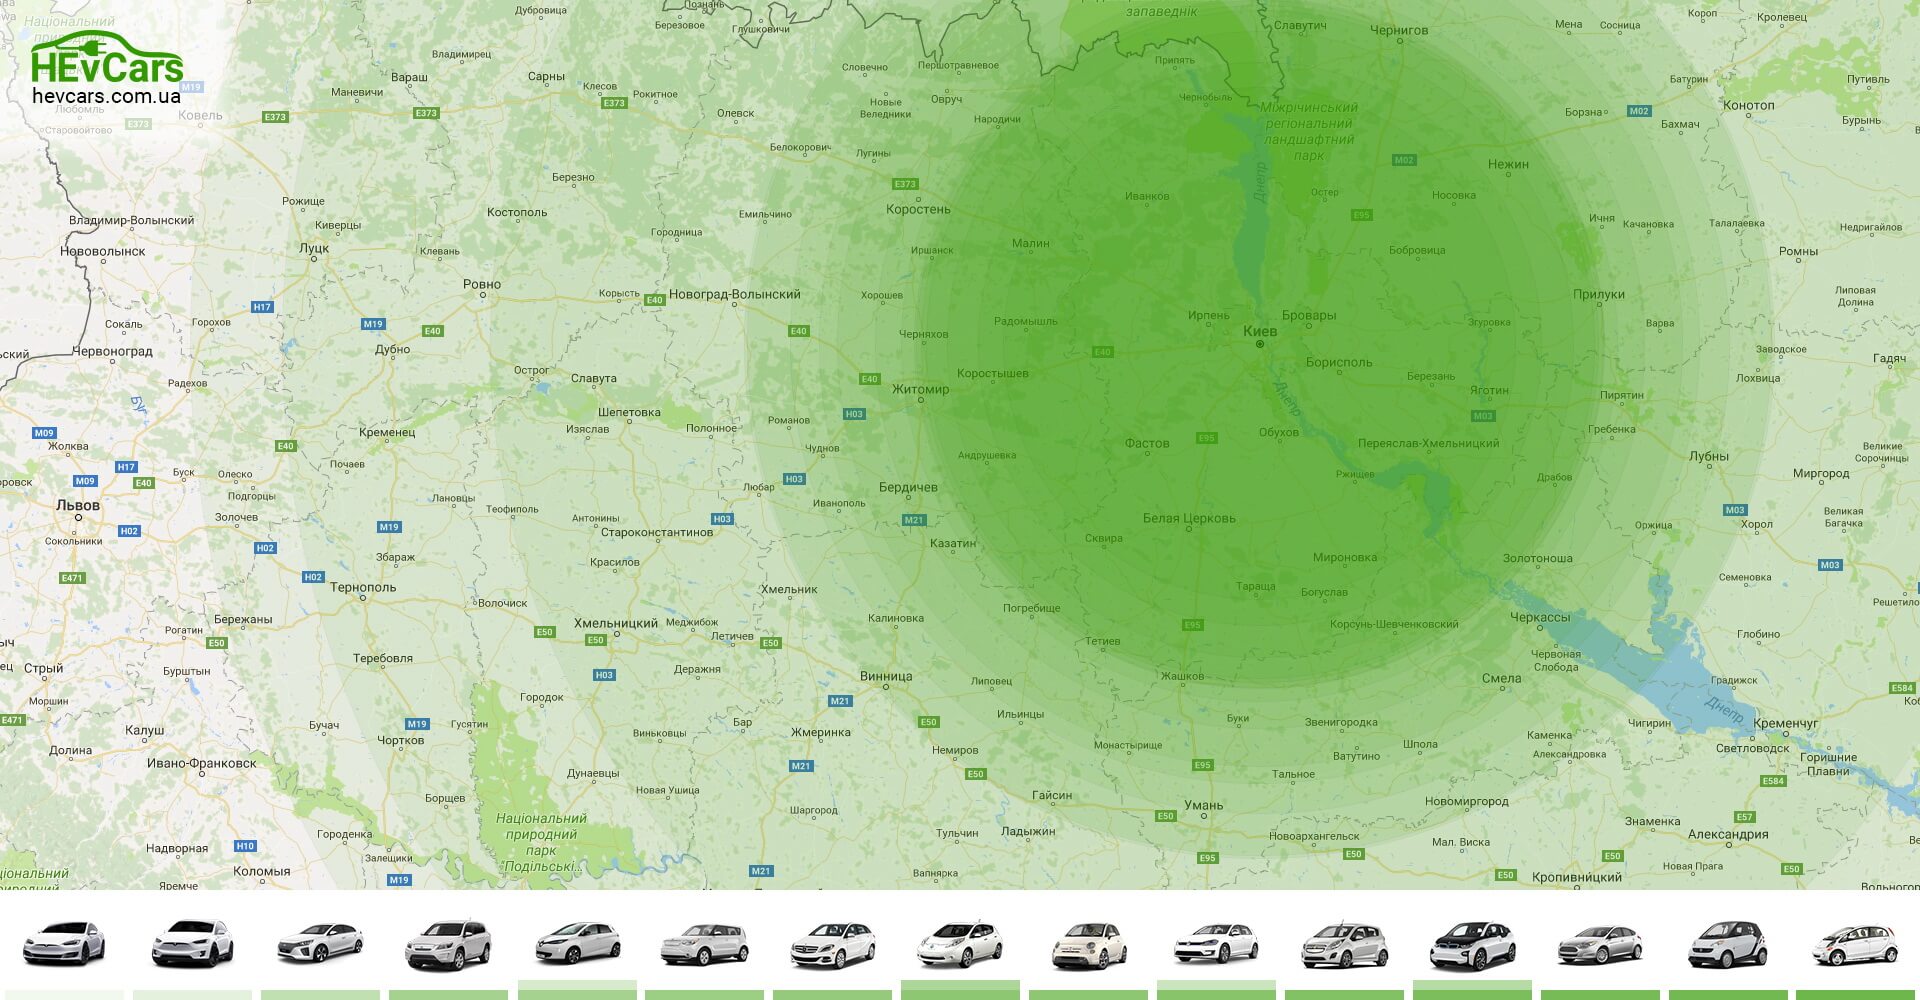 Карта дальности поездки на одном заряде электромобилей в Украине